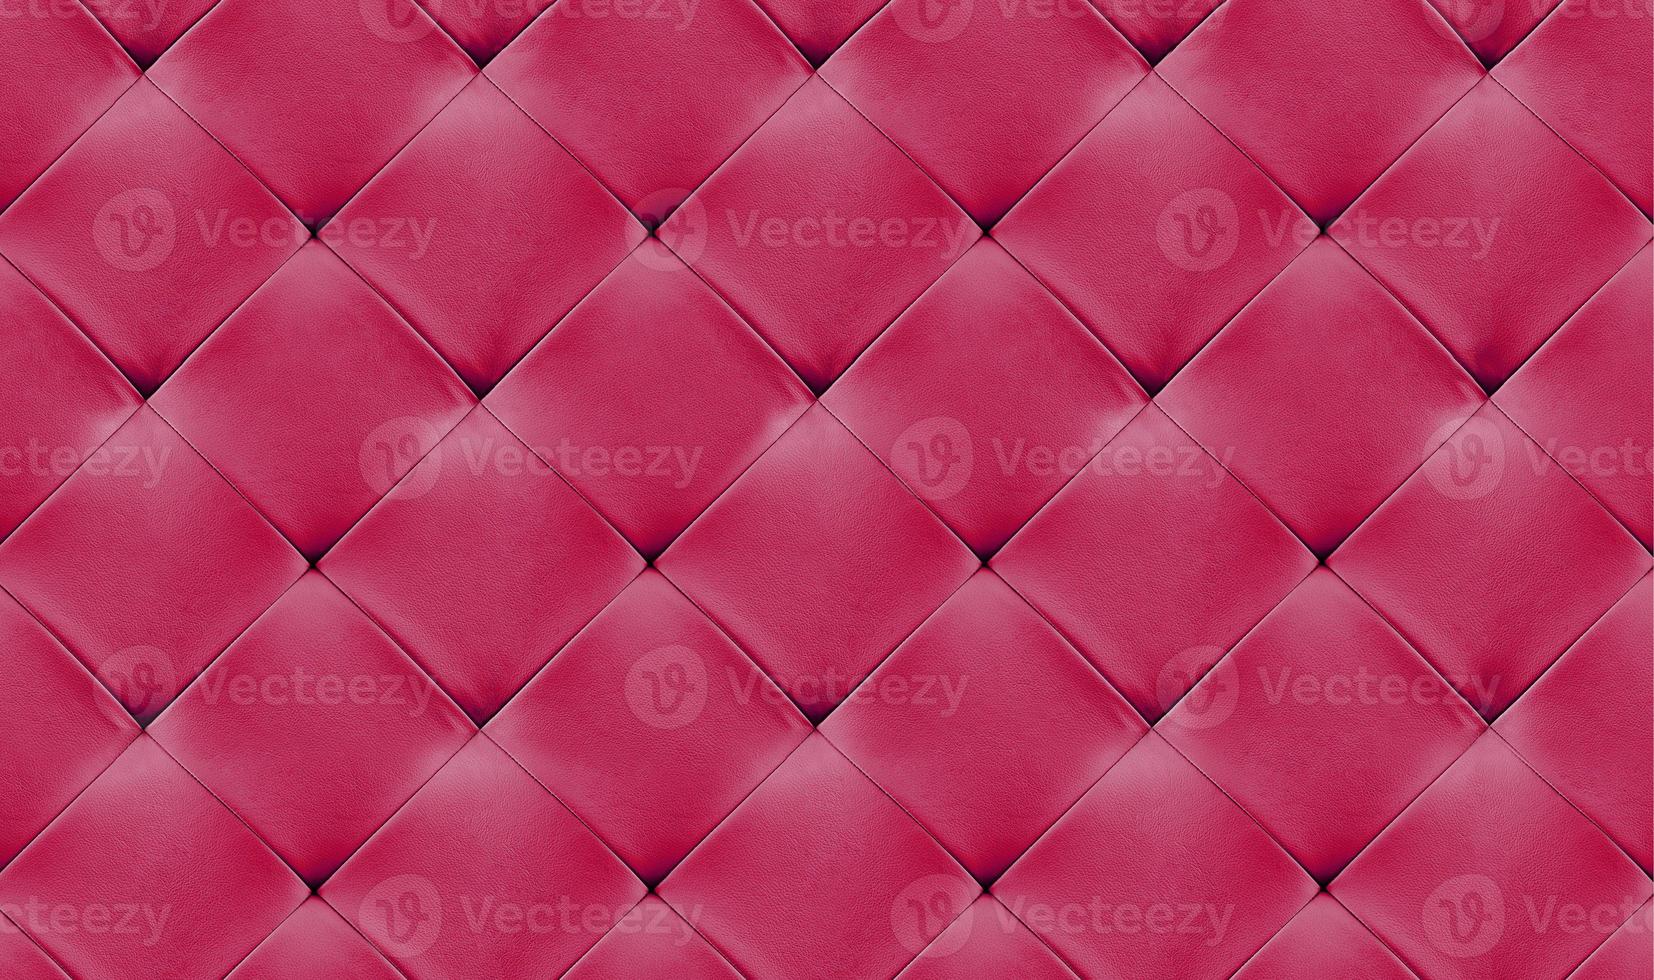 rosa naturlederhintergrund, klassisches kariertes muster für möbel, wand, kopfteil foto